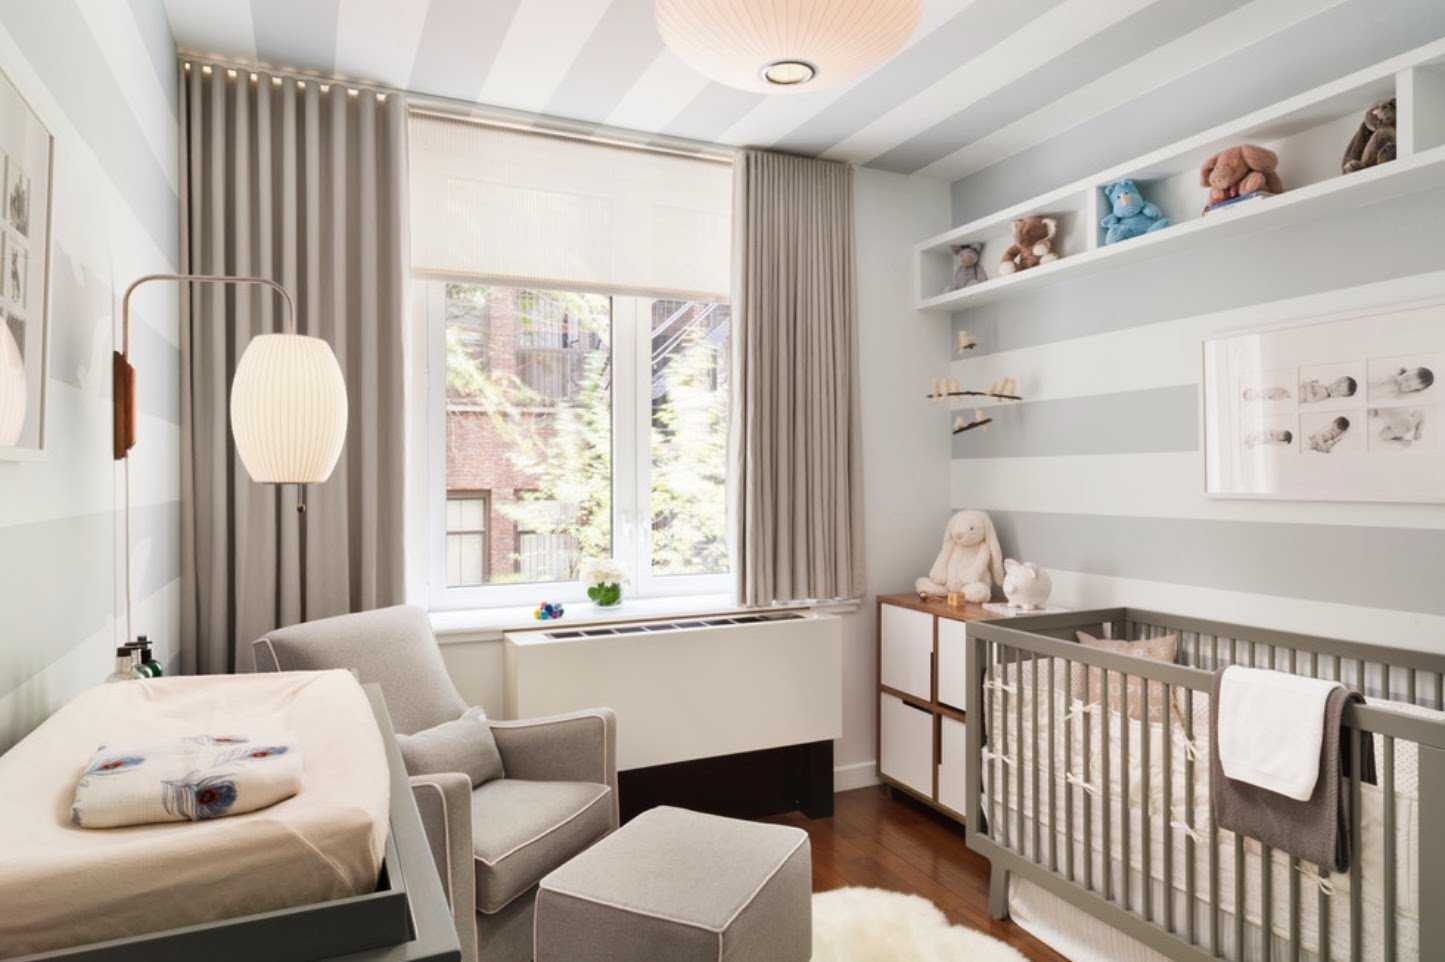 Детская комната для новорожденного: что нужно подготовить?